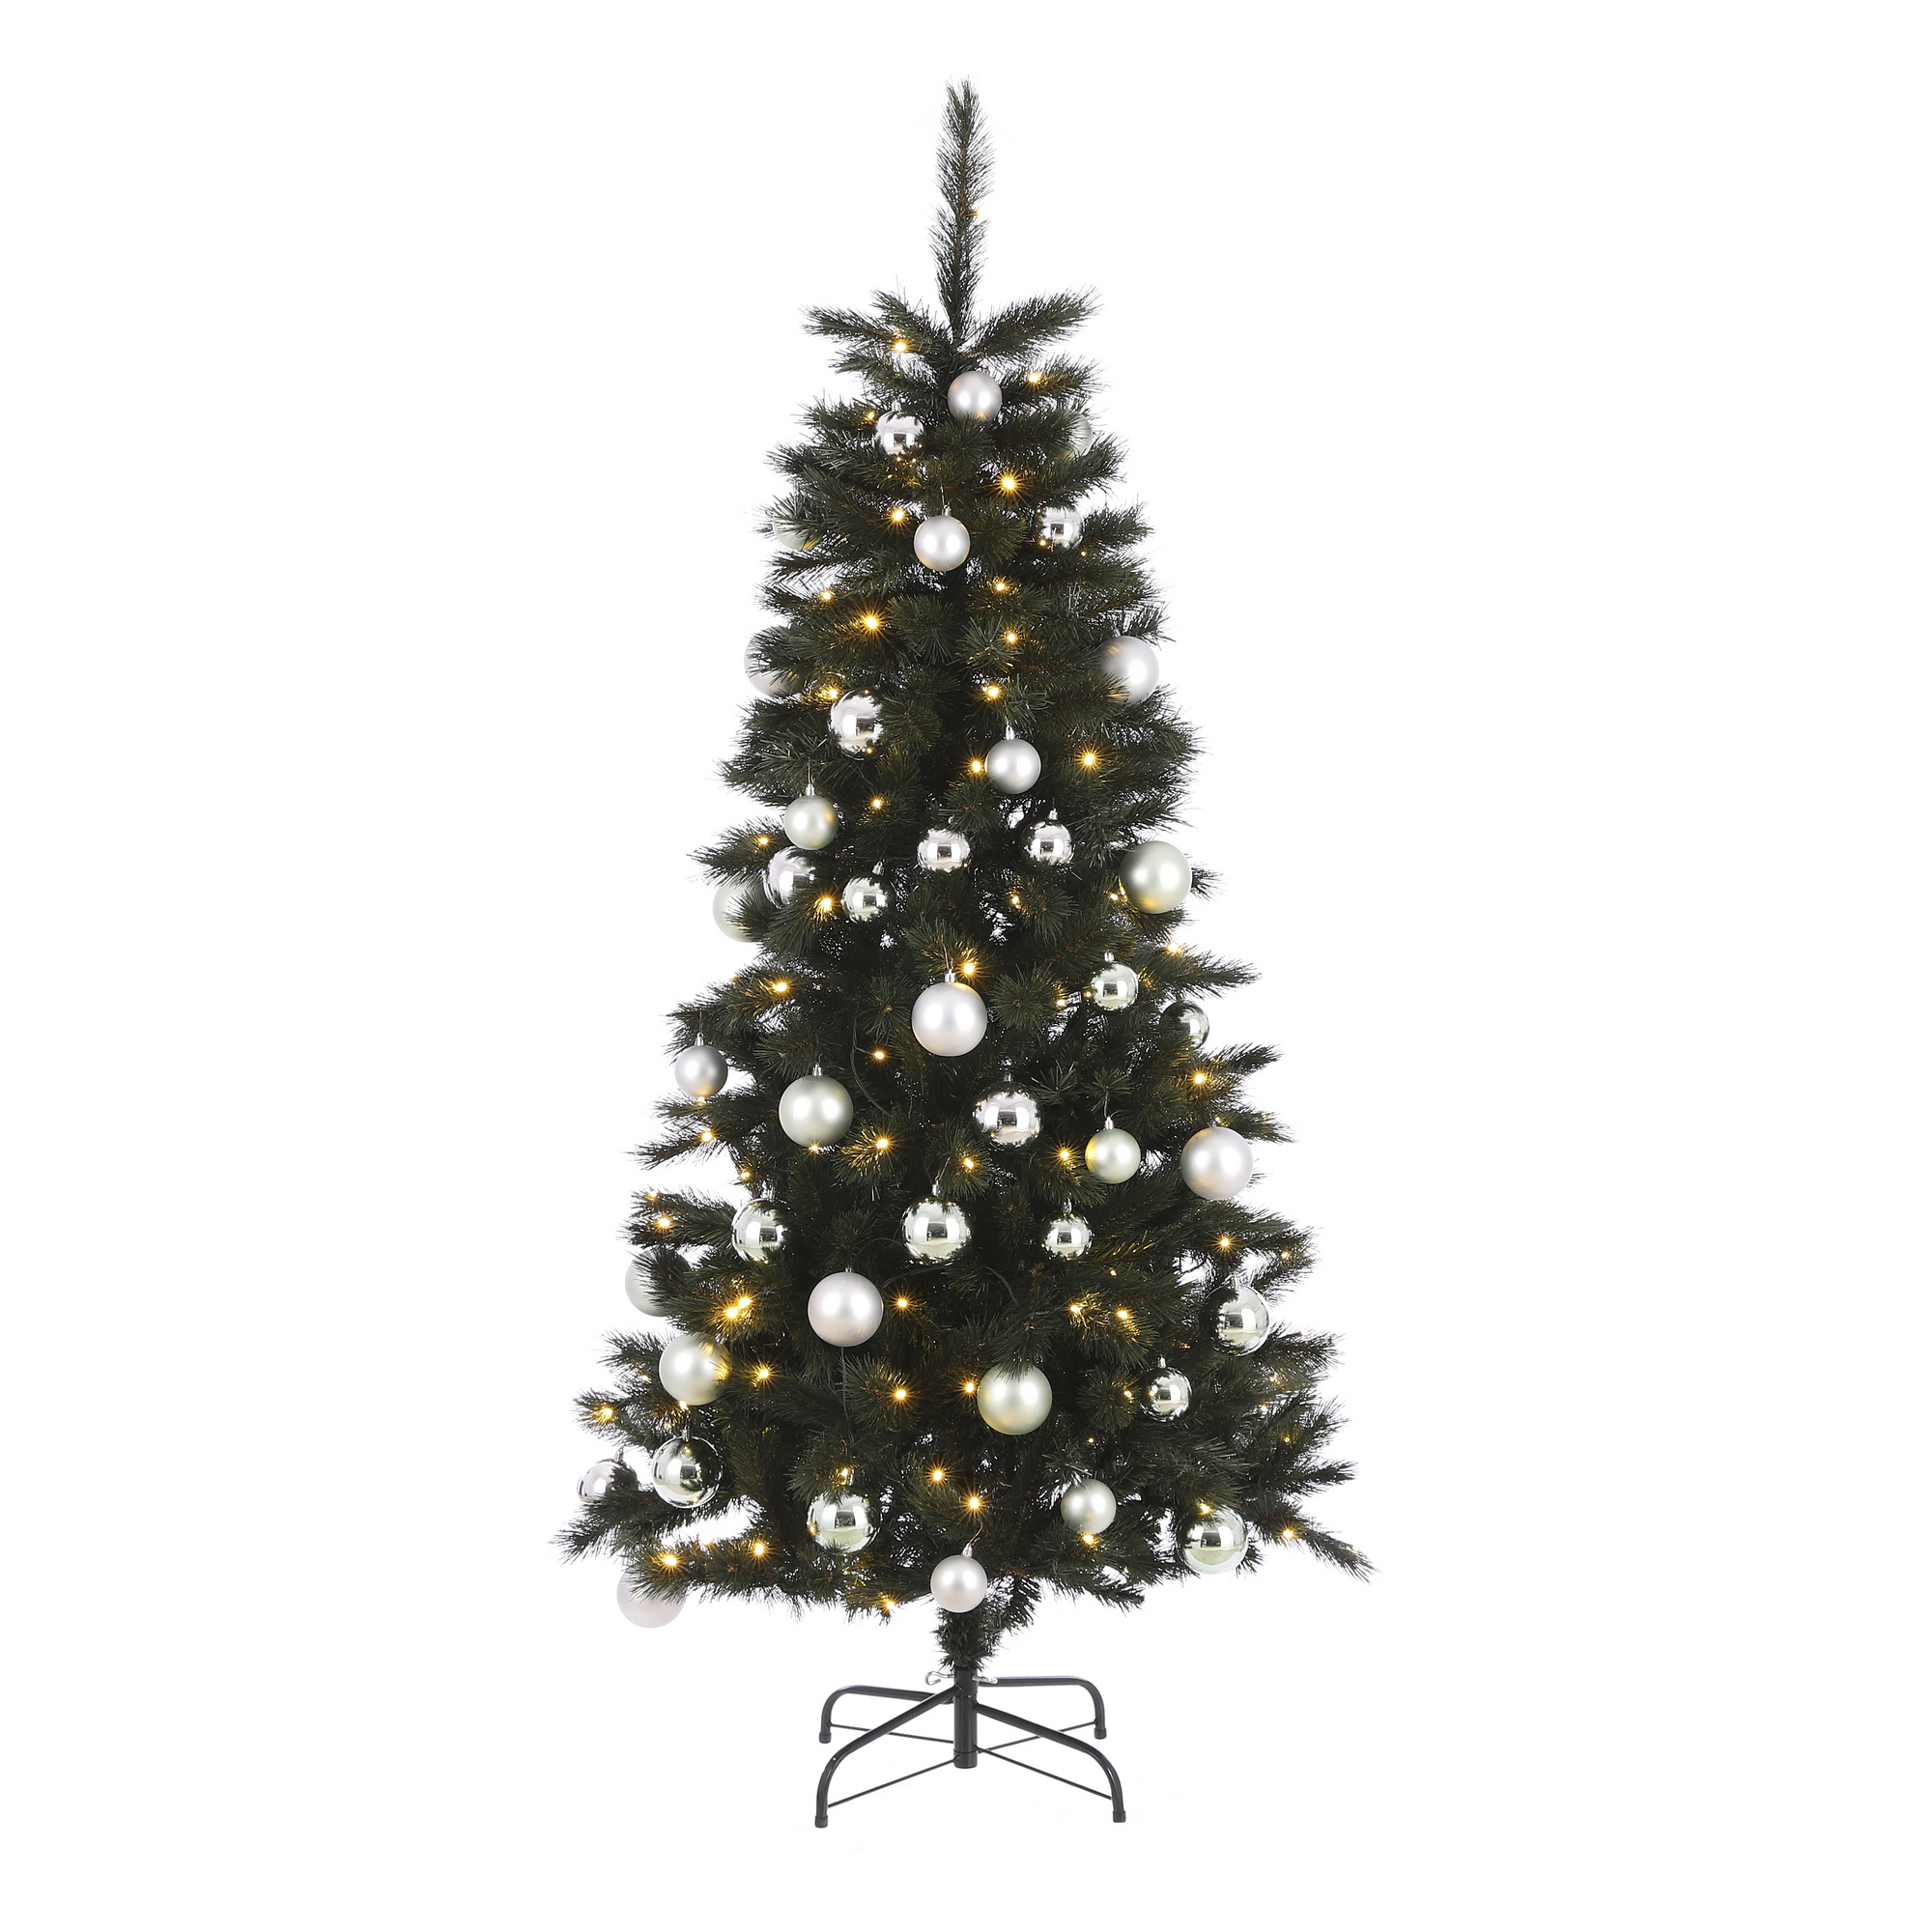 Künstlicher Weihnachtsbaum 'Voss' grün/silber/minze 185 cm, mit LED-Beleuchtung + product picture